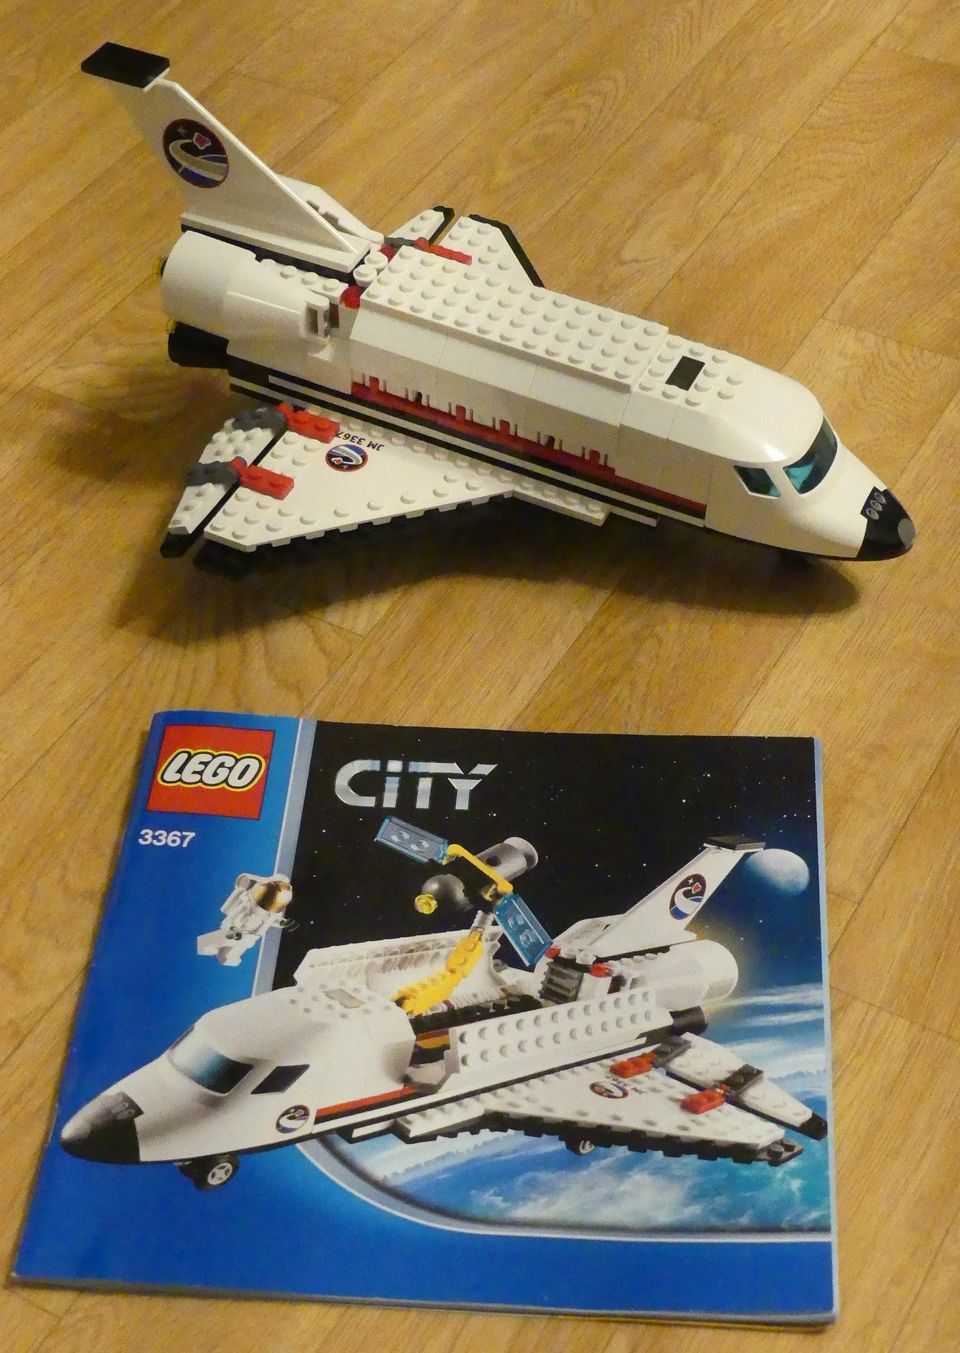 Lego City 3367 avaruusalus